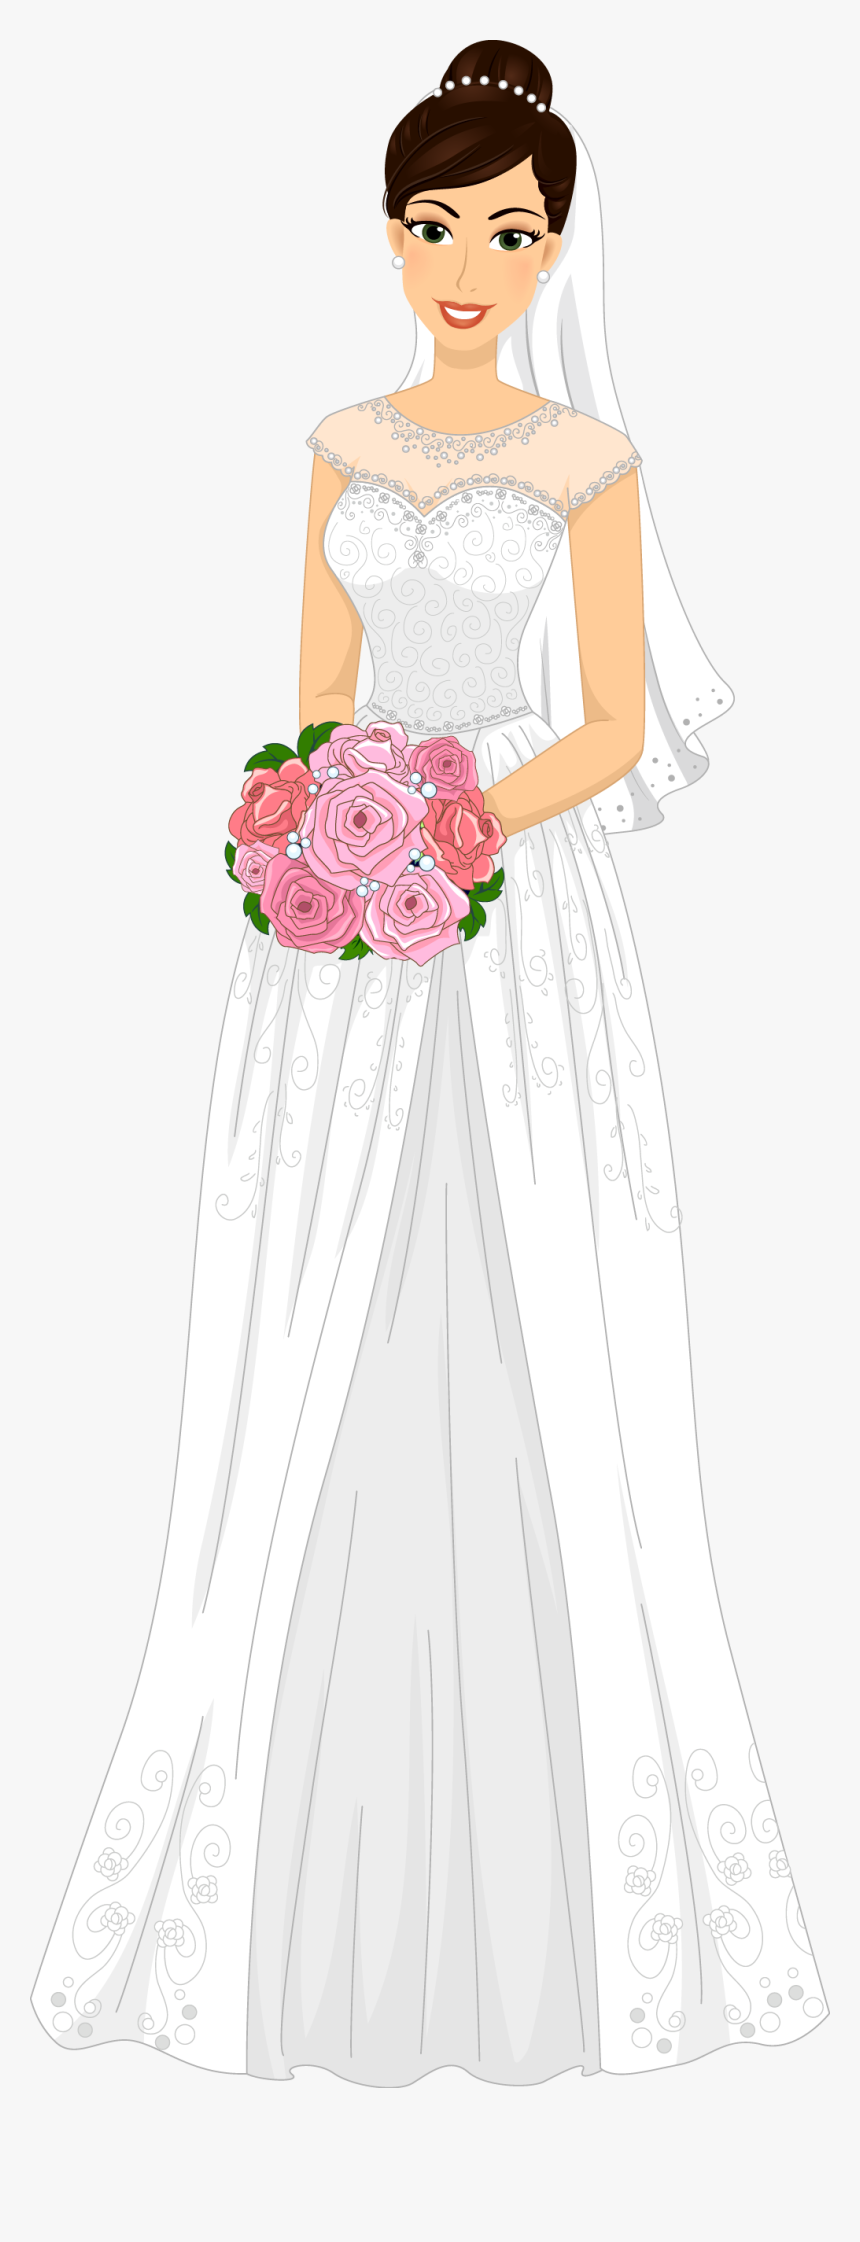 Bride - Transparent Bride Dress Png, Png Download, Free Download